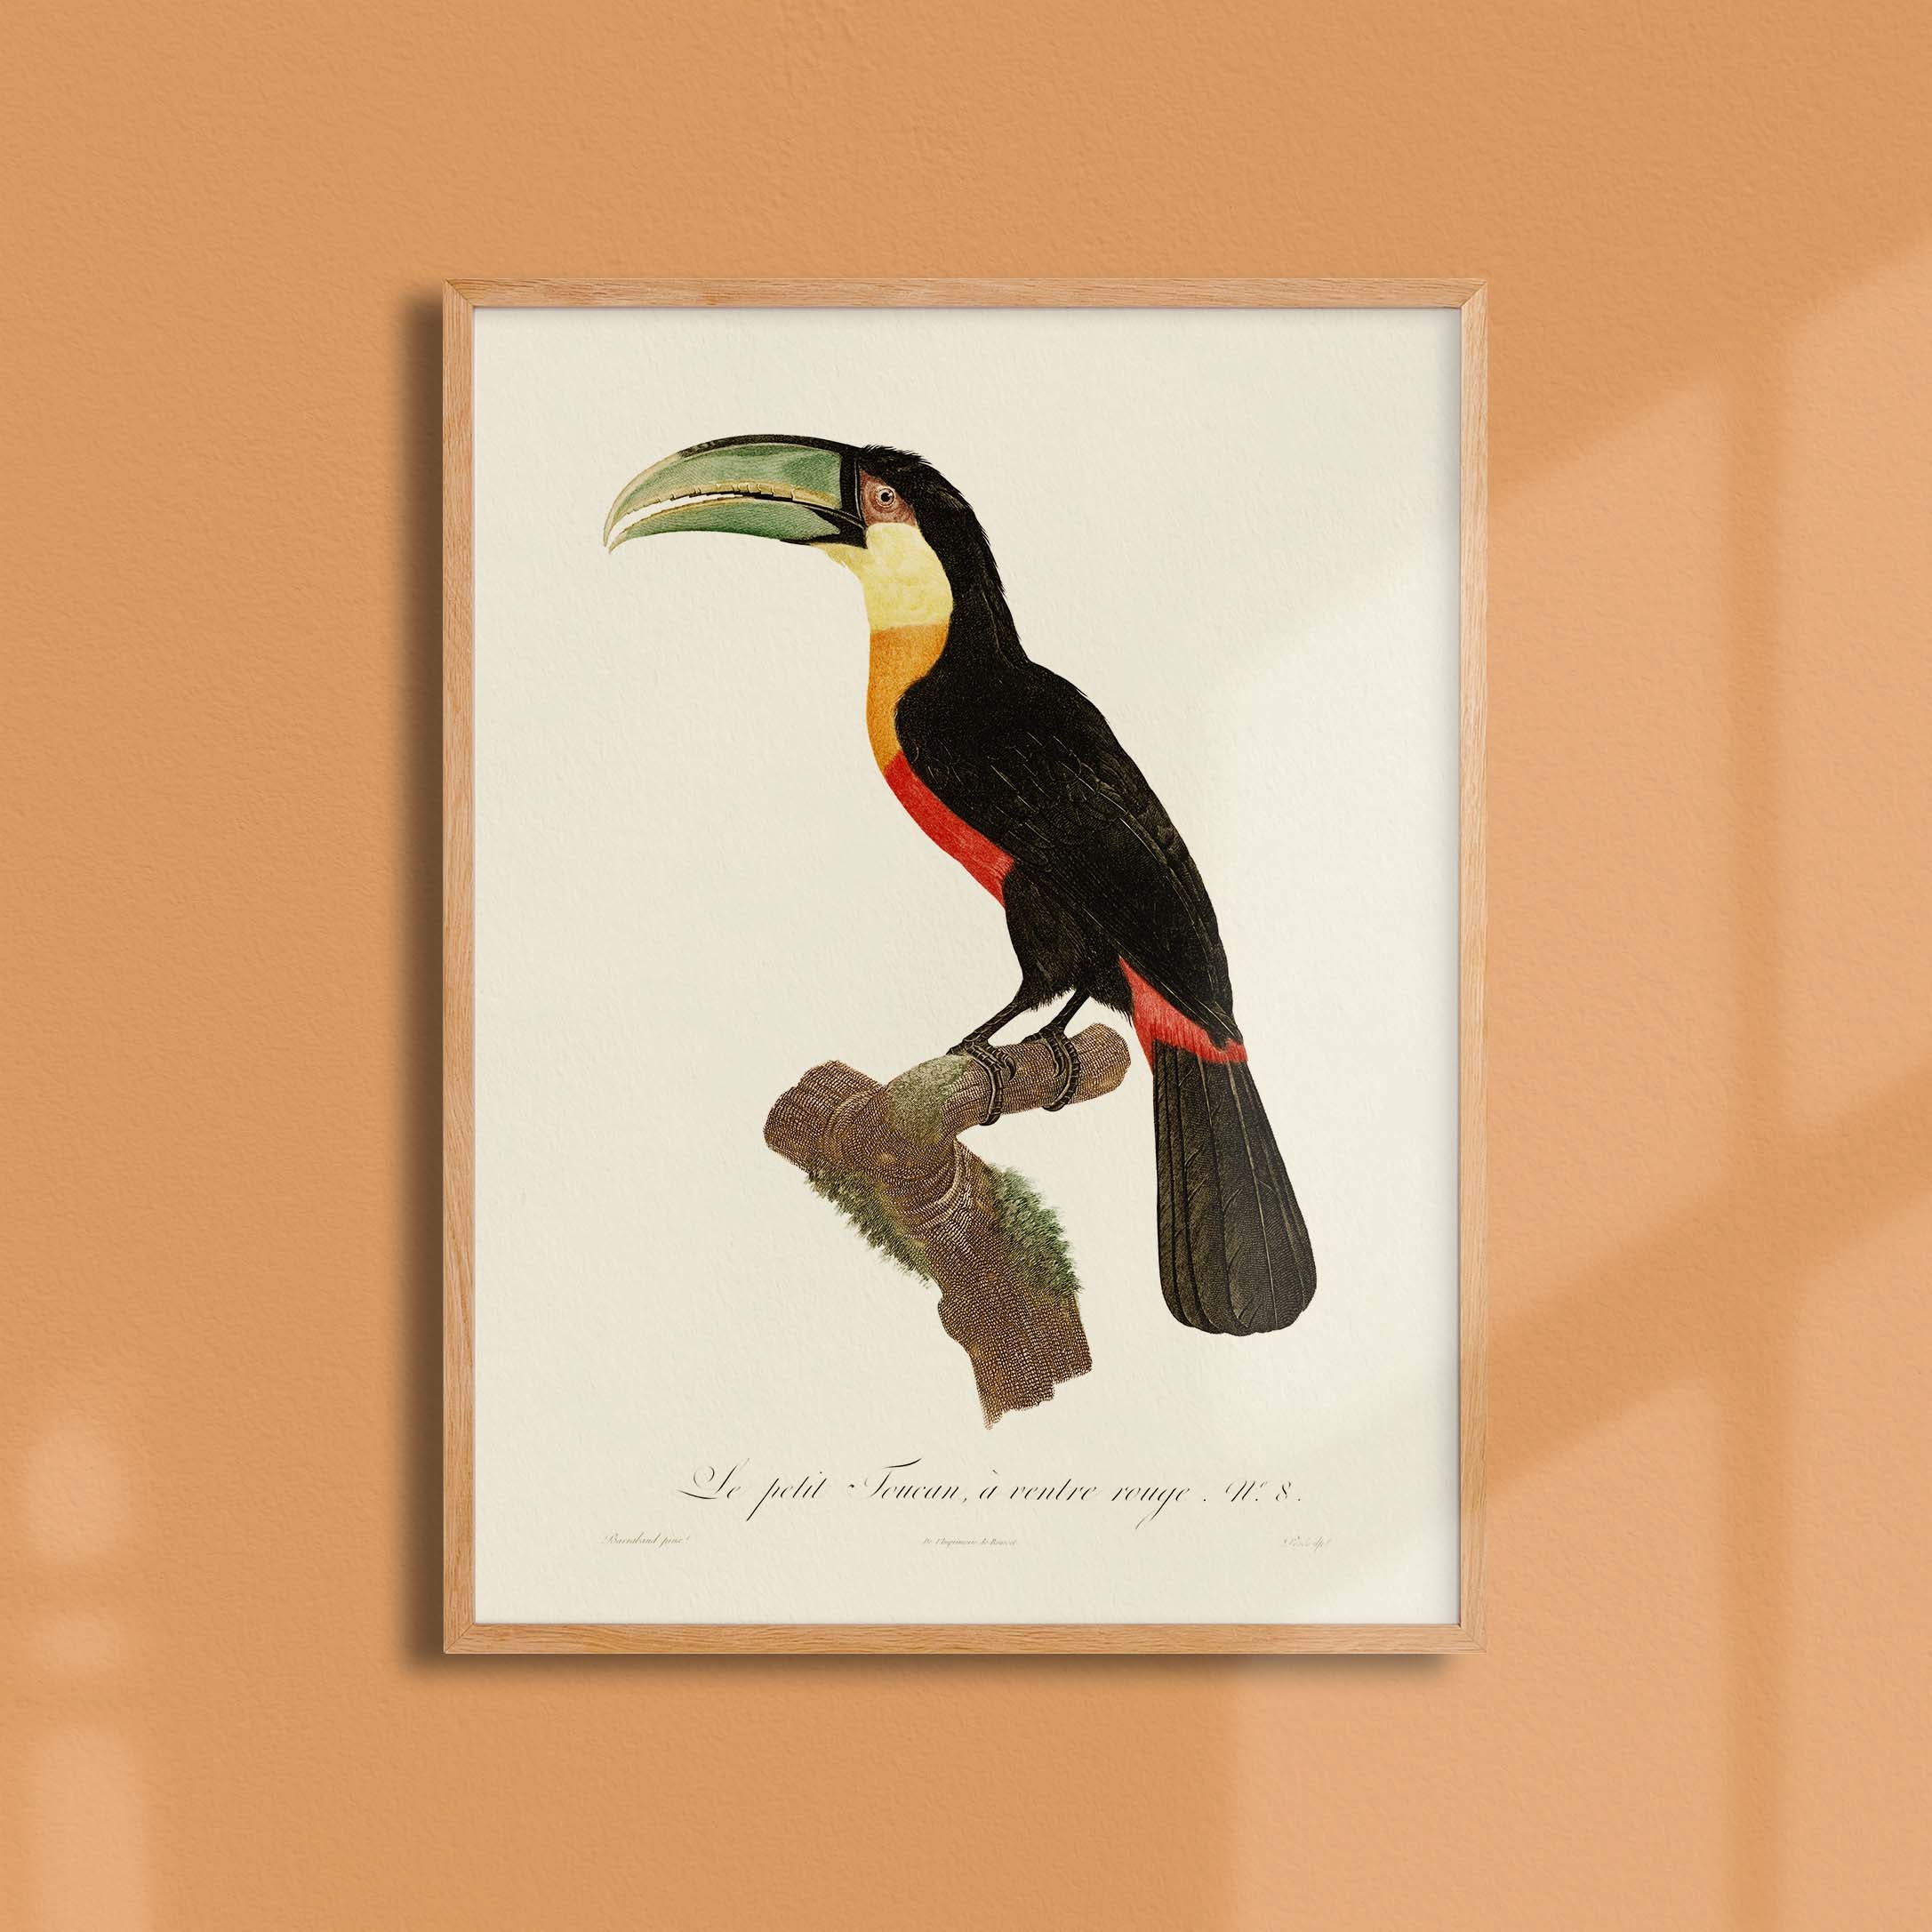 Planche d'ornithologie - Le petit Toucan à ventre rouge-oneart.fr